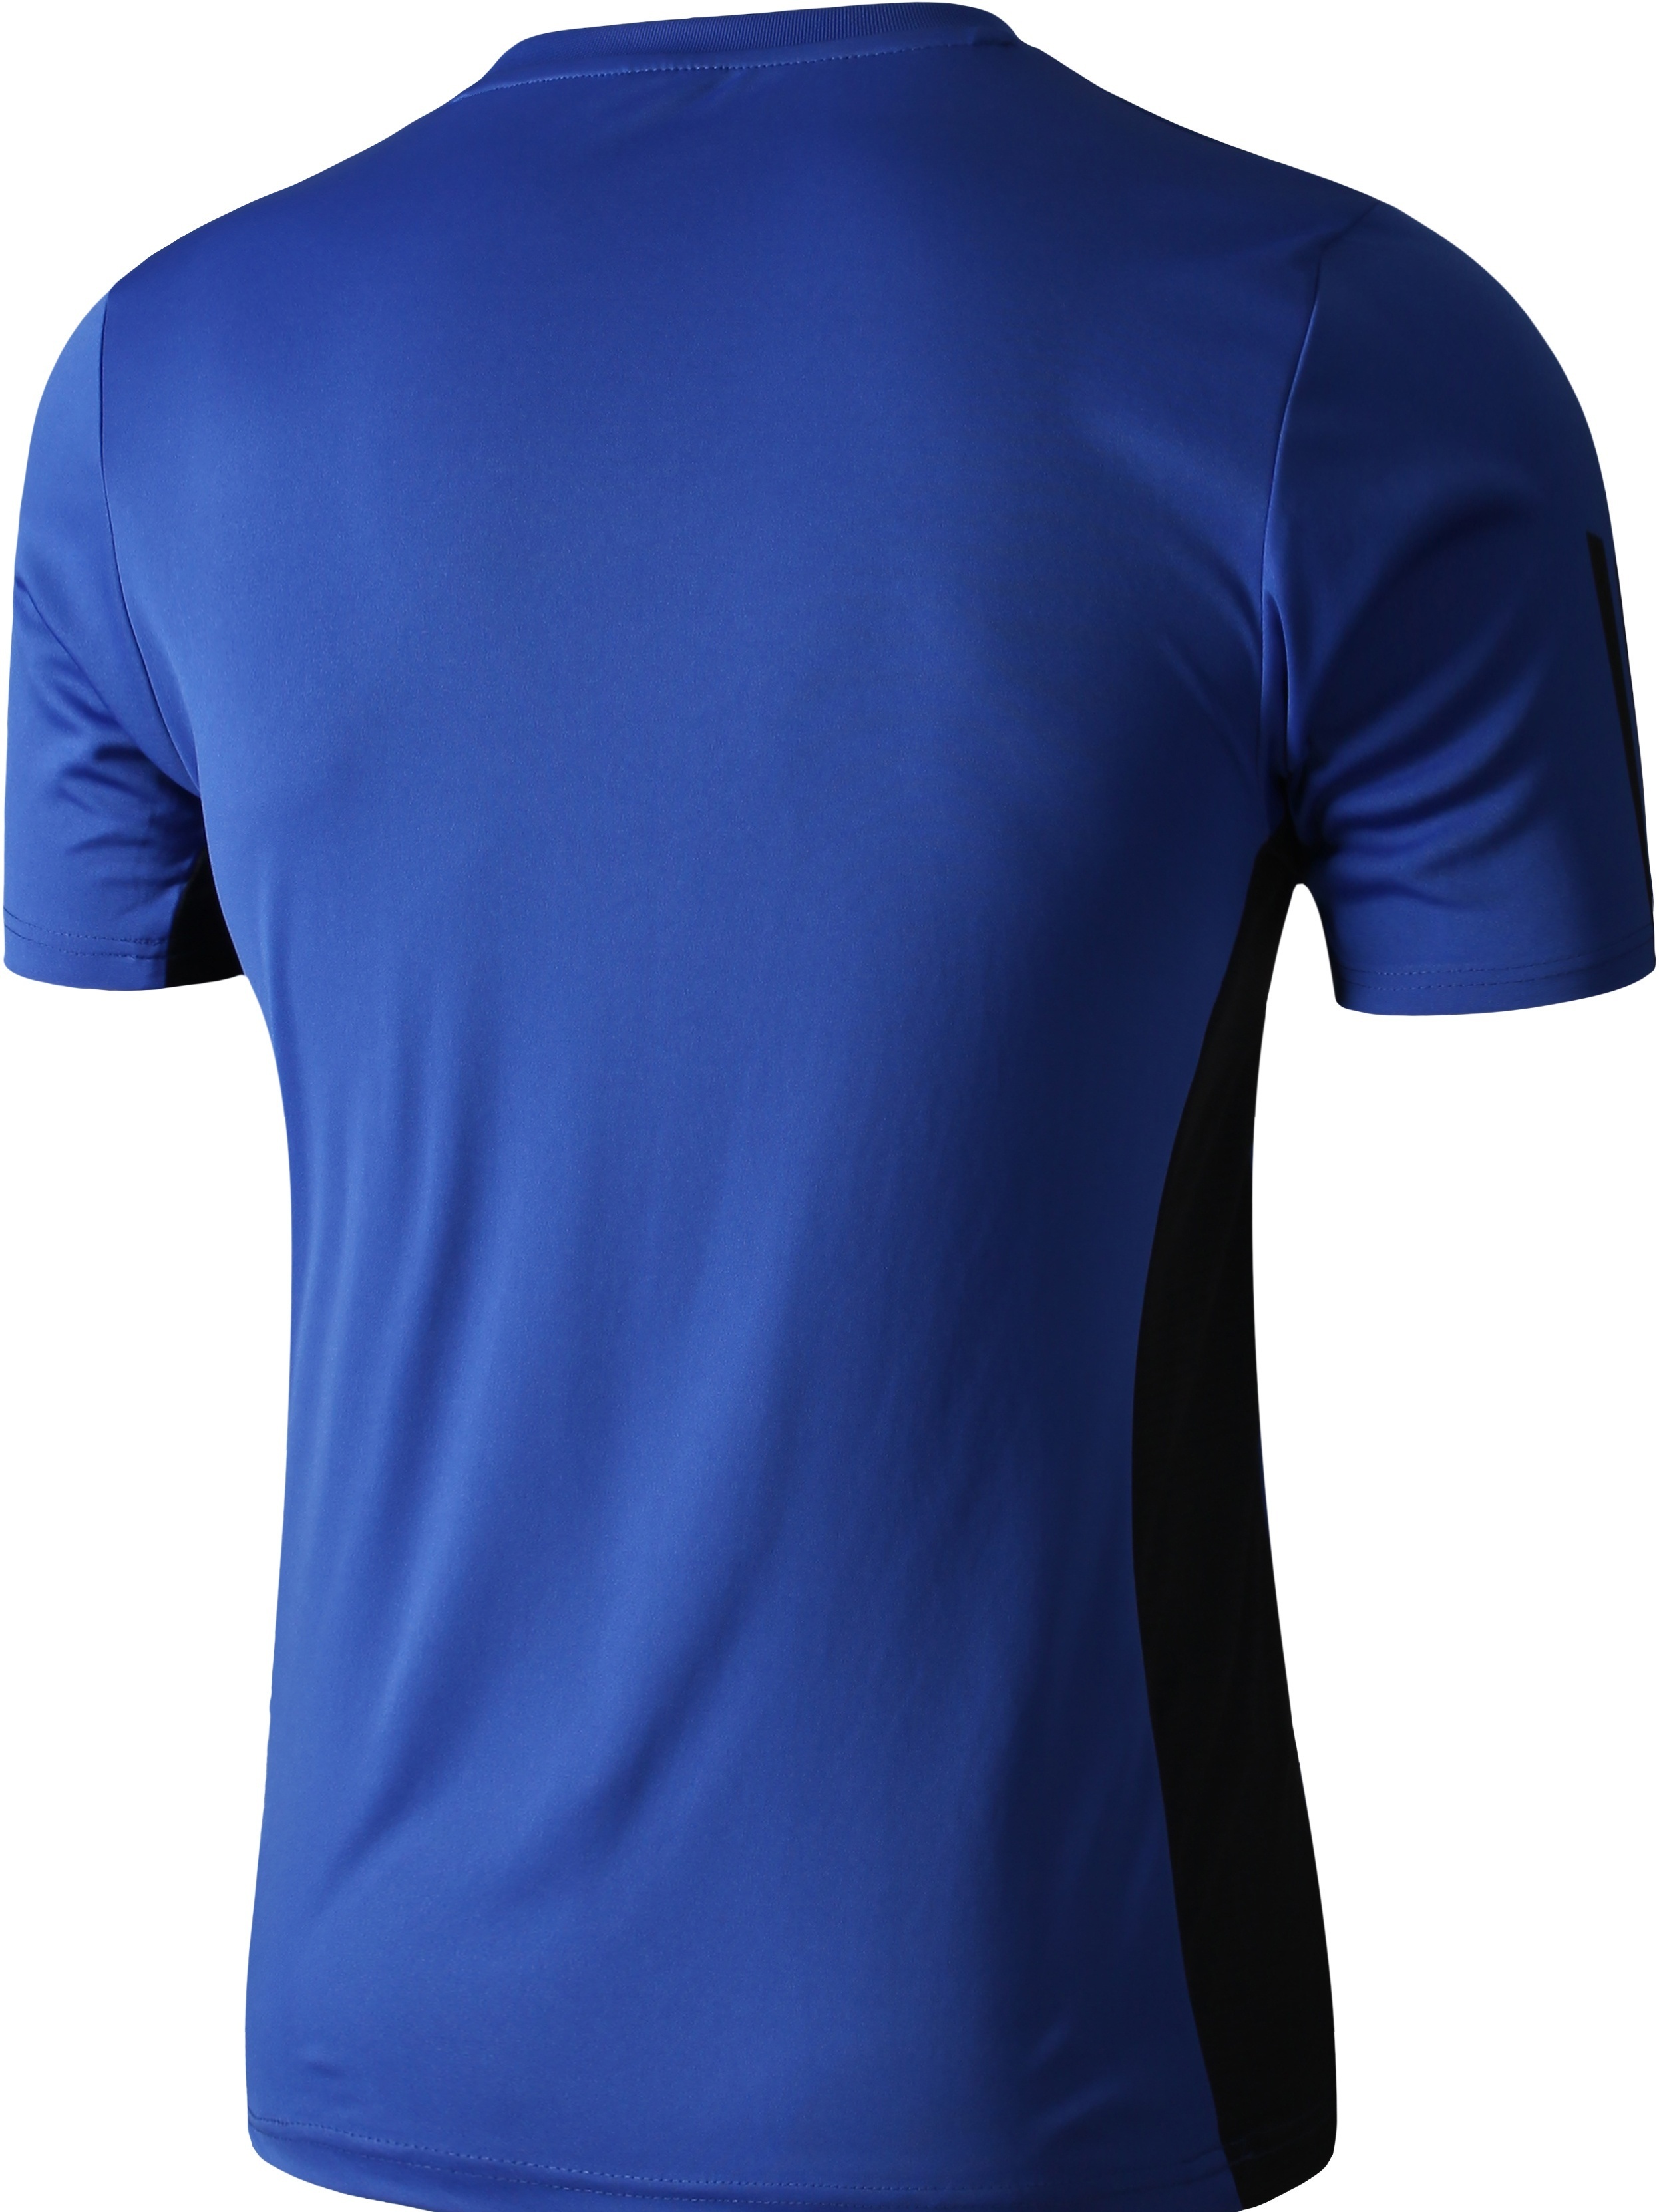 Camiseta deportiva de manga corta para hombre, camisetas deportivas,  camisetas para correr, golf, tenis, bolos, correr, LSL133